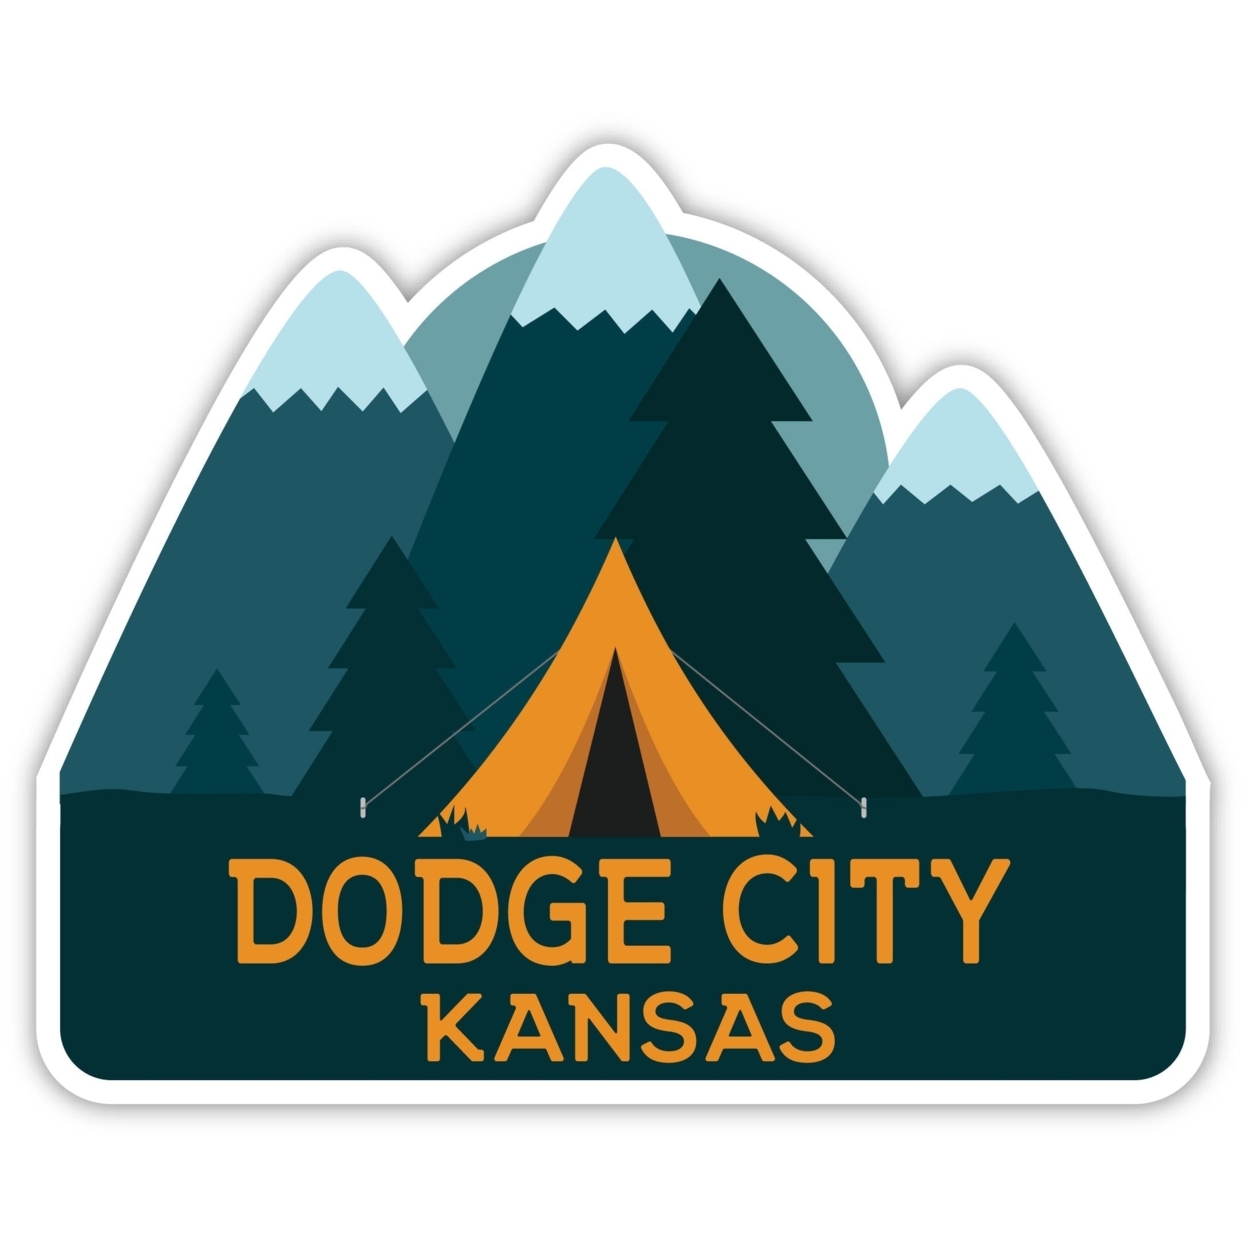 Dodge City Kansas Souvenir Decorative Stickers (Choose Theme And Size) - Single Unit, 8-Inch, Tent